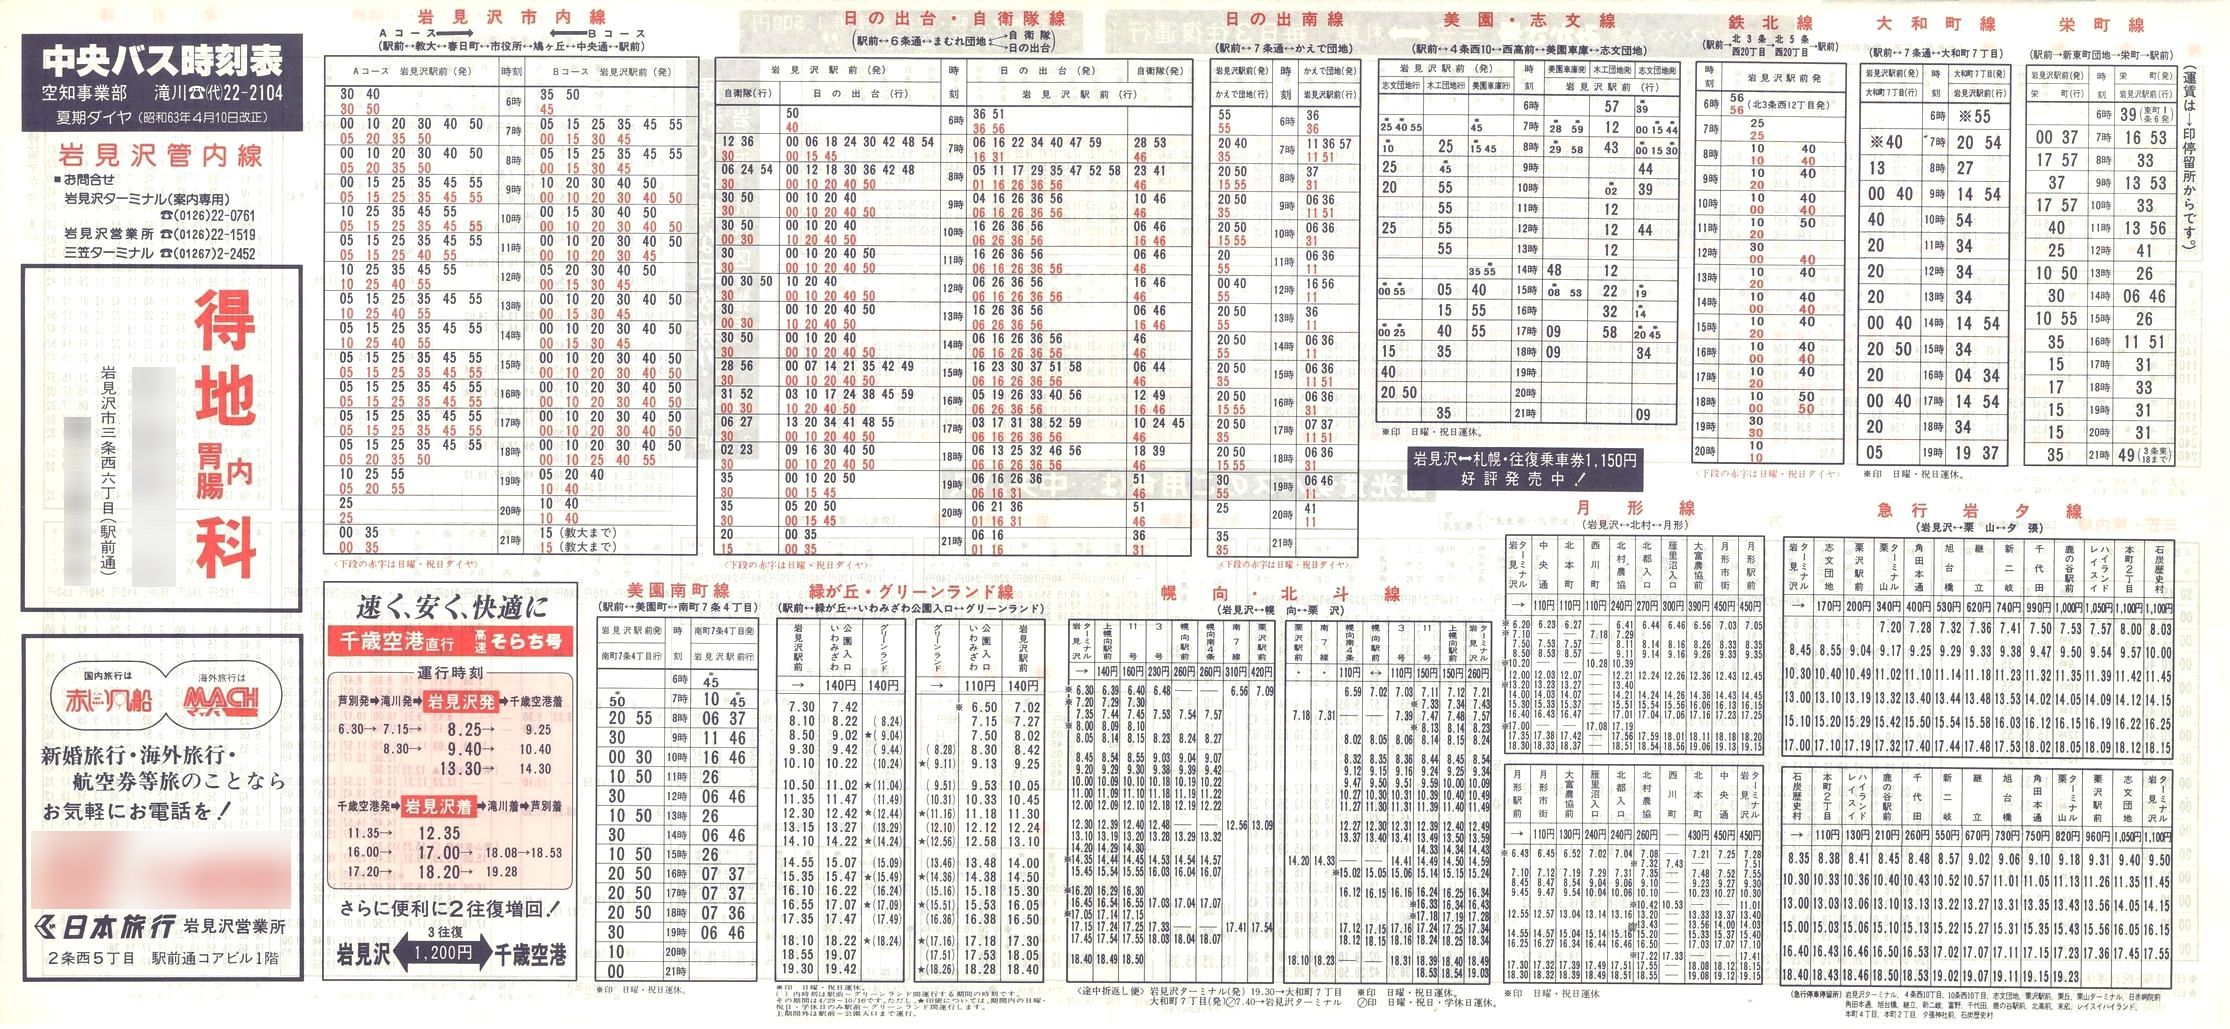 1988-04-10改正_北海道中央バス(空知)_岩見沢管内線時刻表表面